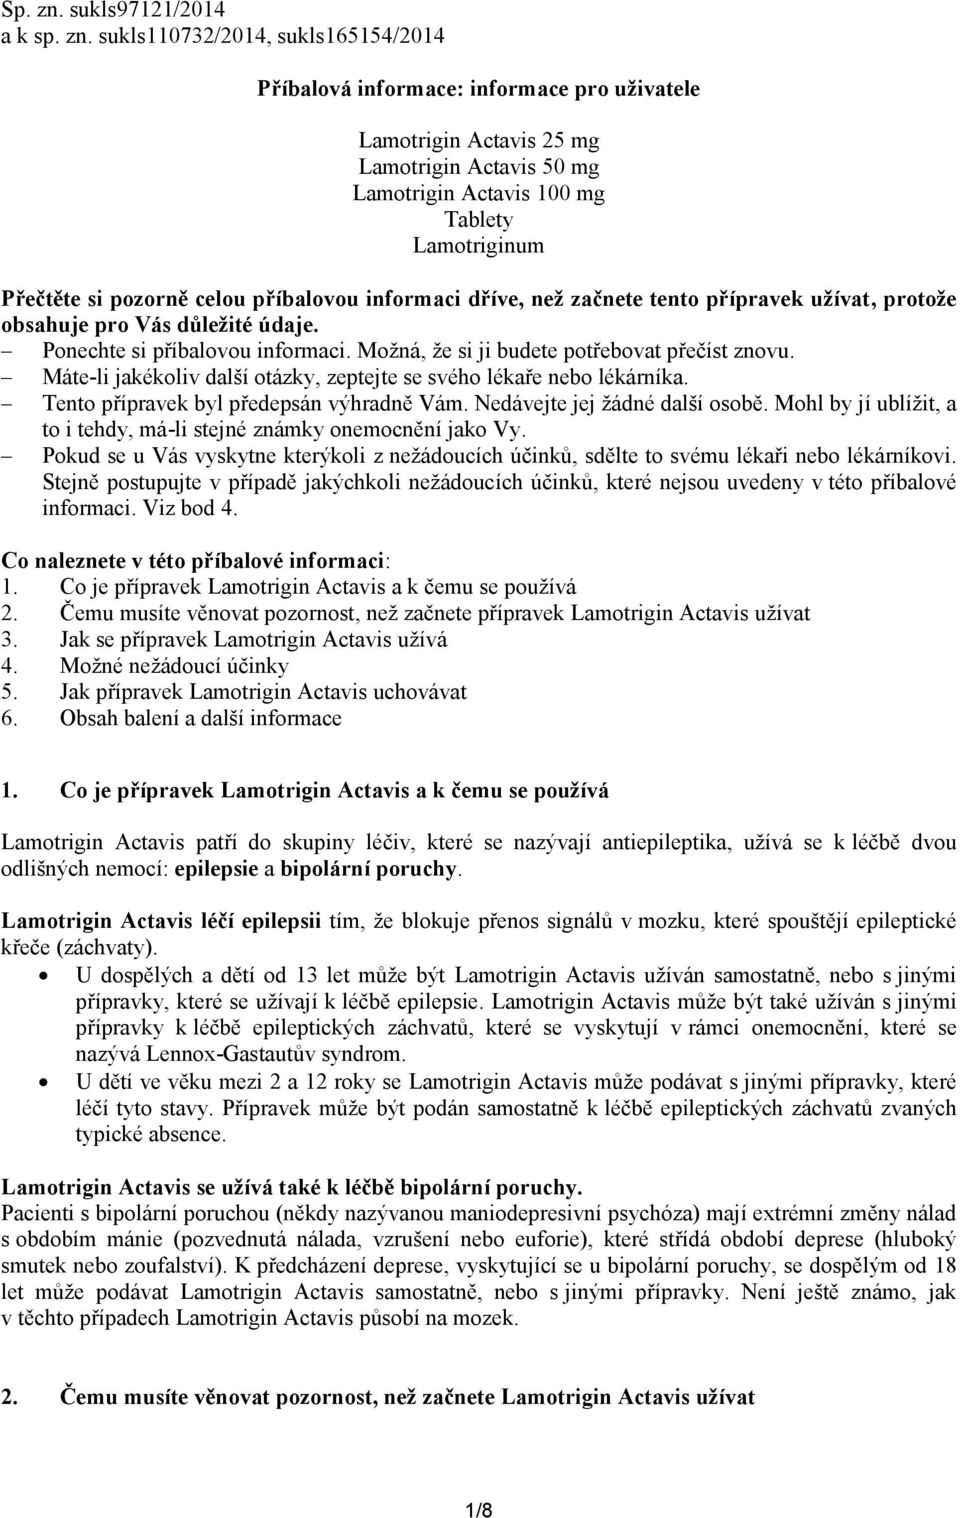 sukls110732/2014, sukls165154/2014 Příbalová informace: informace pro uživatele Lamotrigin Actavis 25 mg Lamotrigin Actavis 50 mg Lamotrigin Actavis 100 mg Tablety Lamotriginum Přečtěte si pozorně